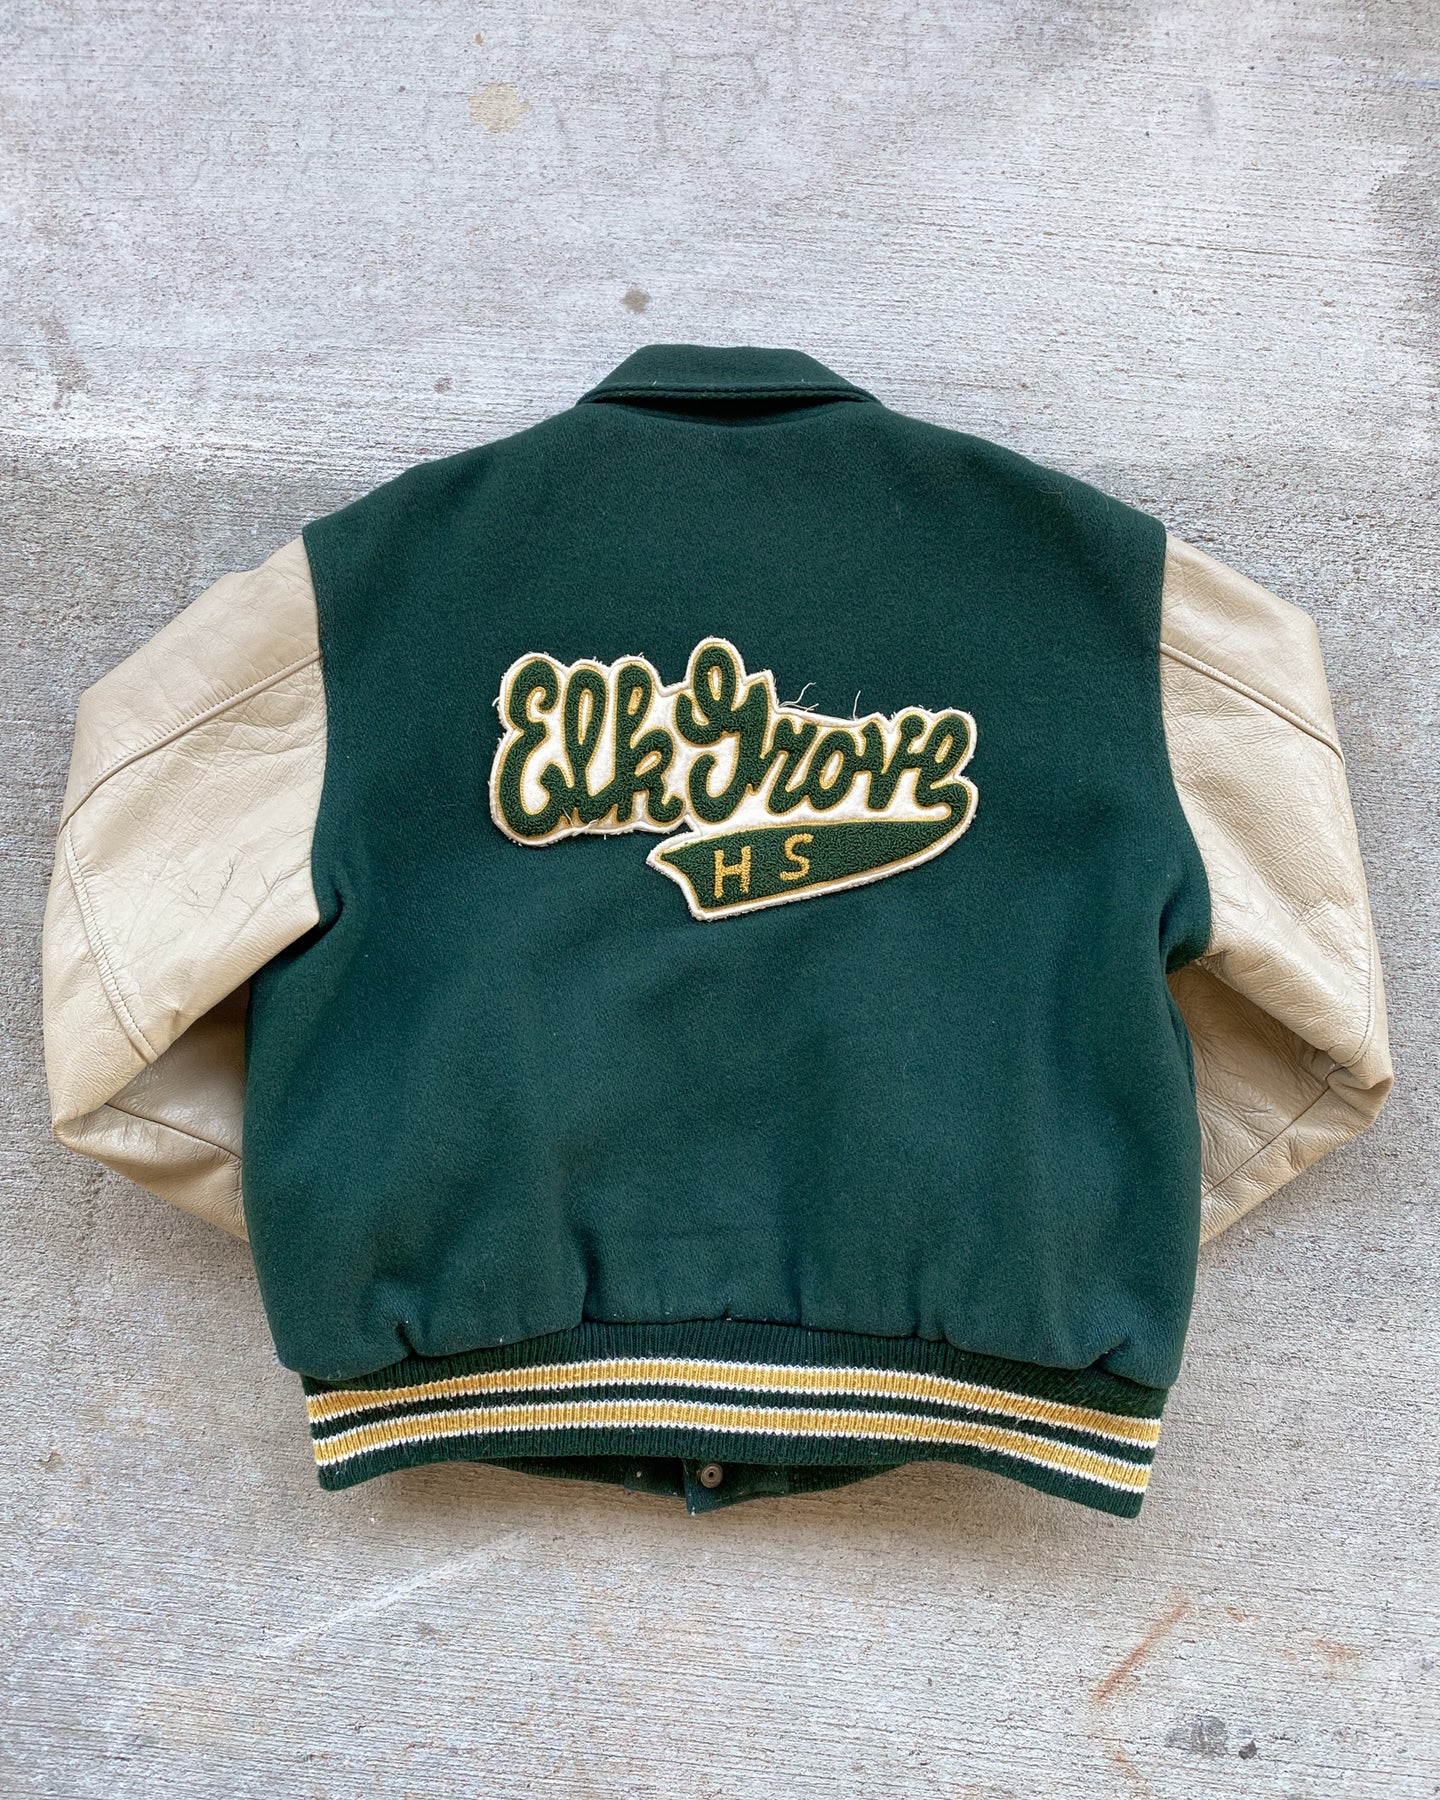 1971 Elk Grove High School Varsity Jacket - Size Large